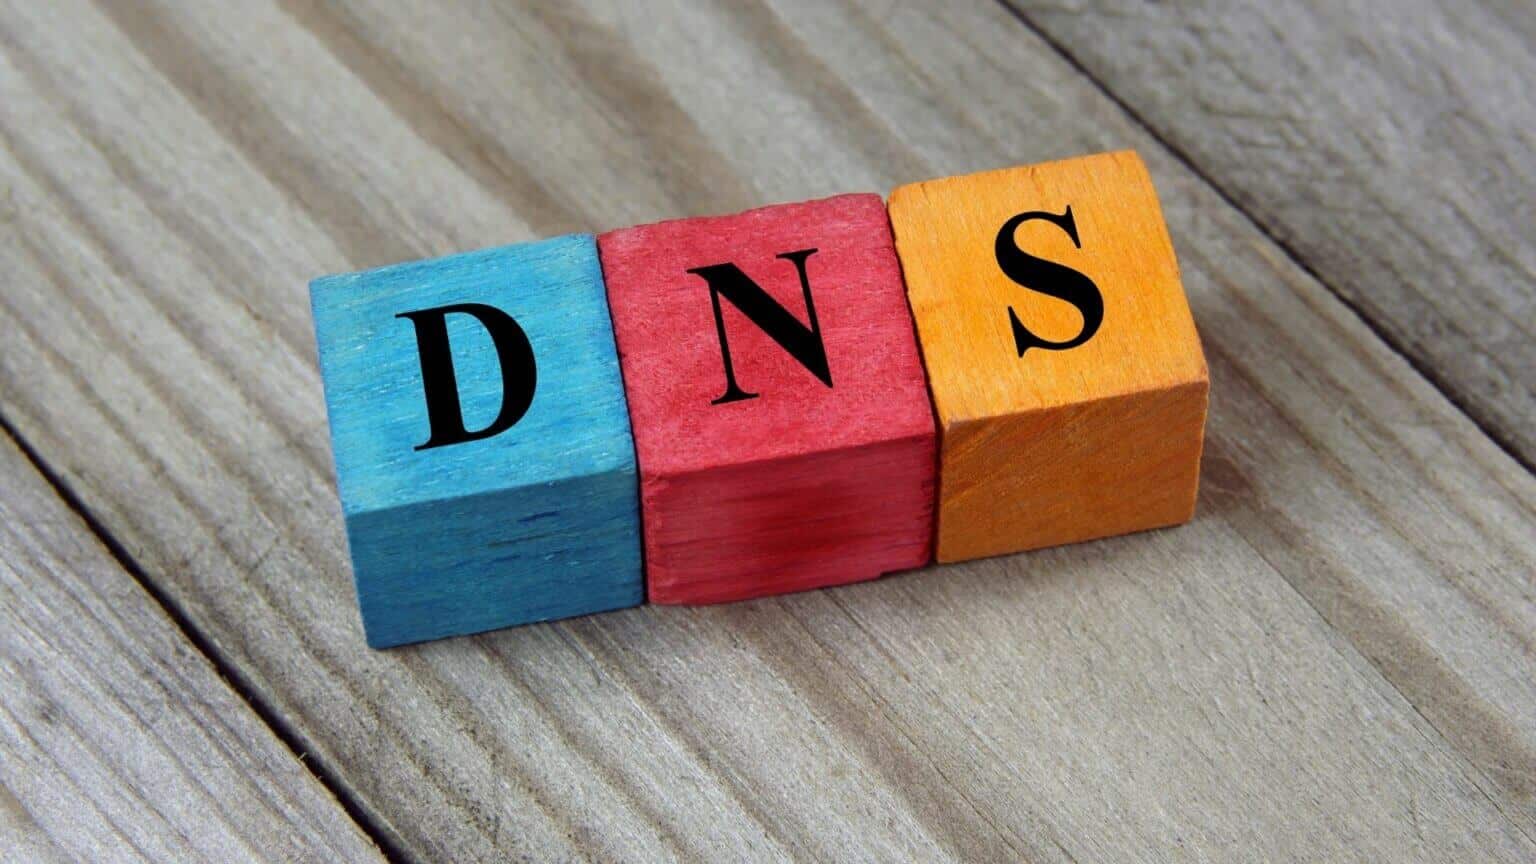 أفضل 3 طرق لتغيير خادم DNS على Windows 11 - %categories